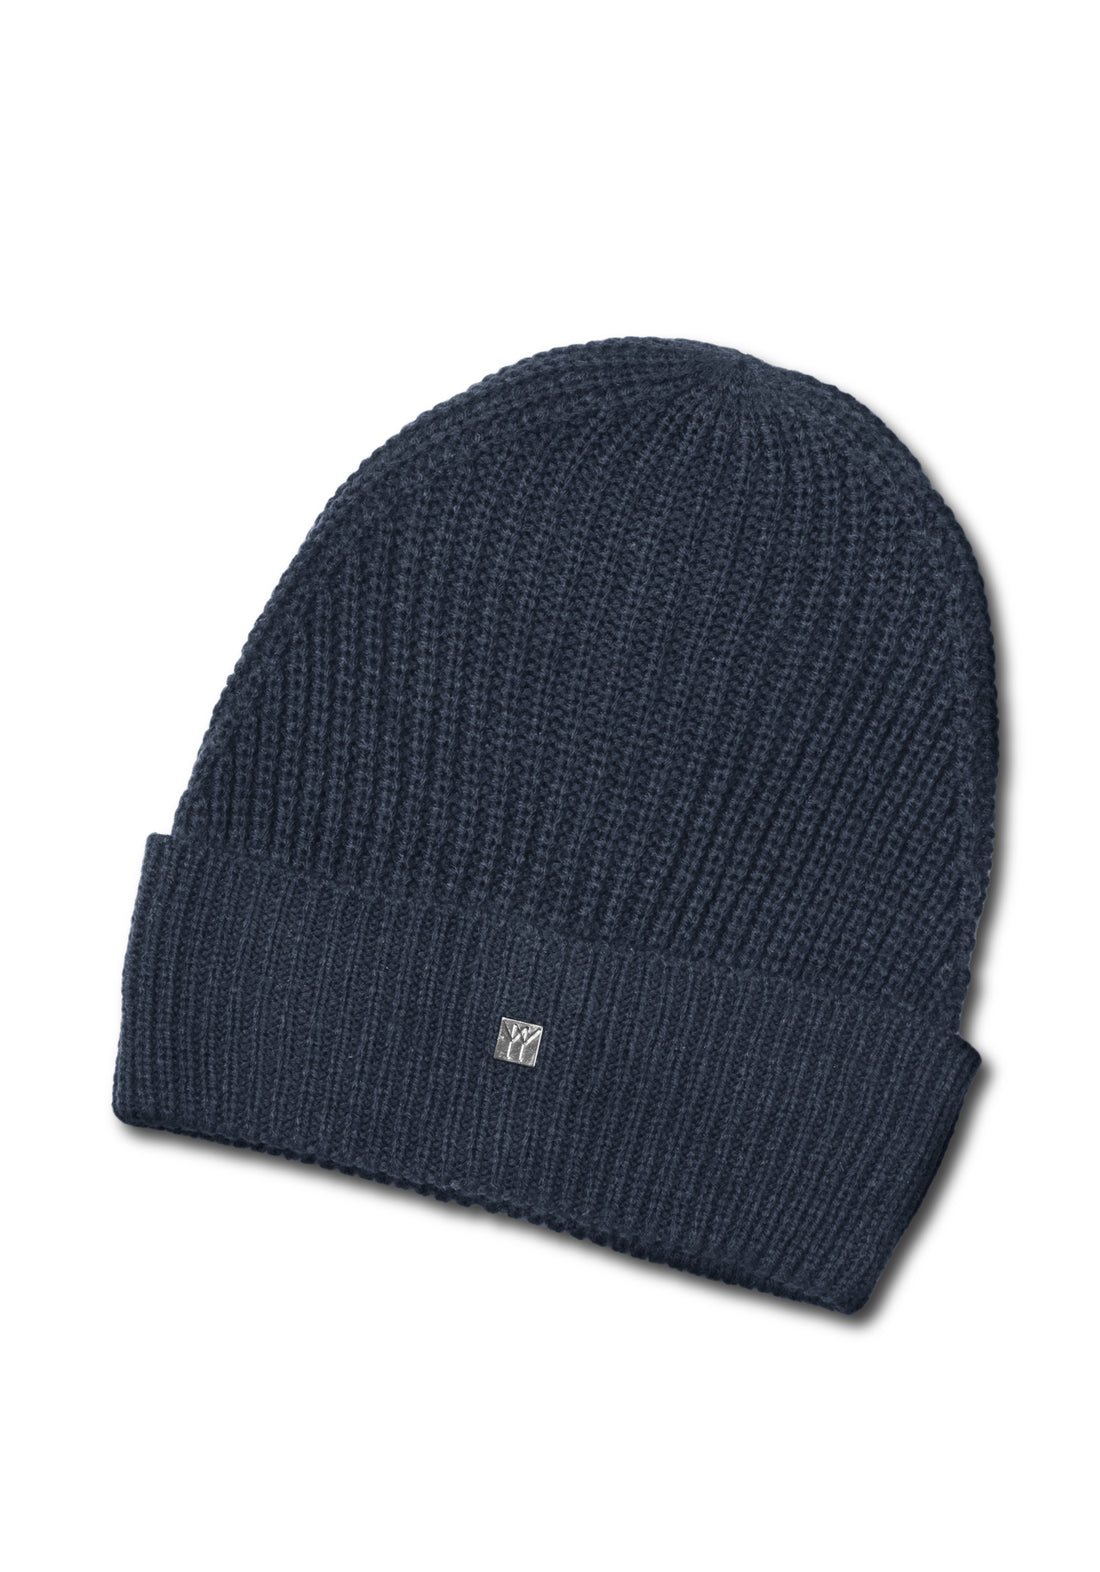 Ribbed wool cap with metal logo - Blue Melange